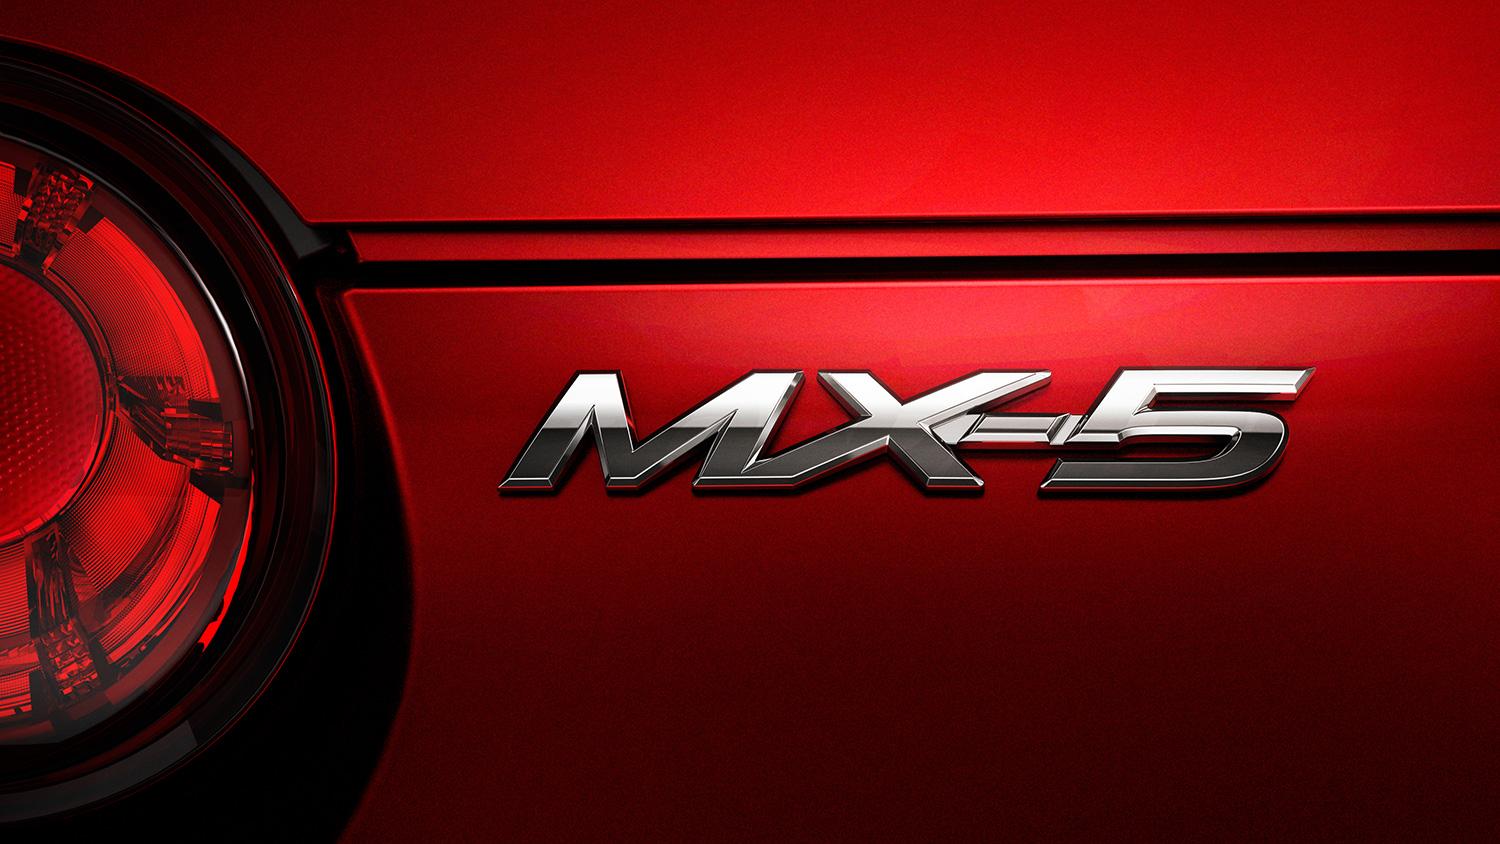 Mazda MX-5 Miata